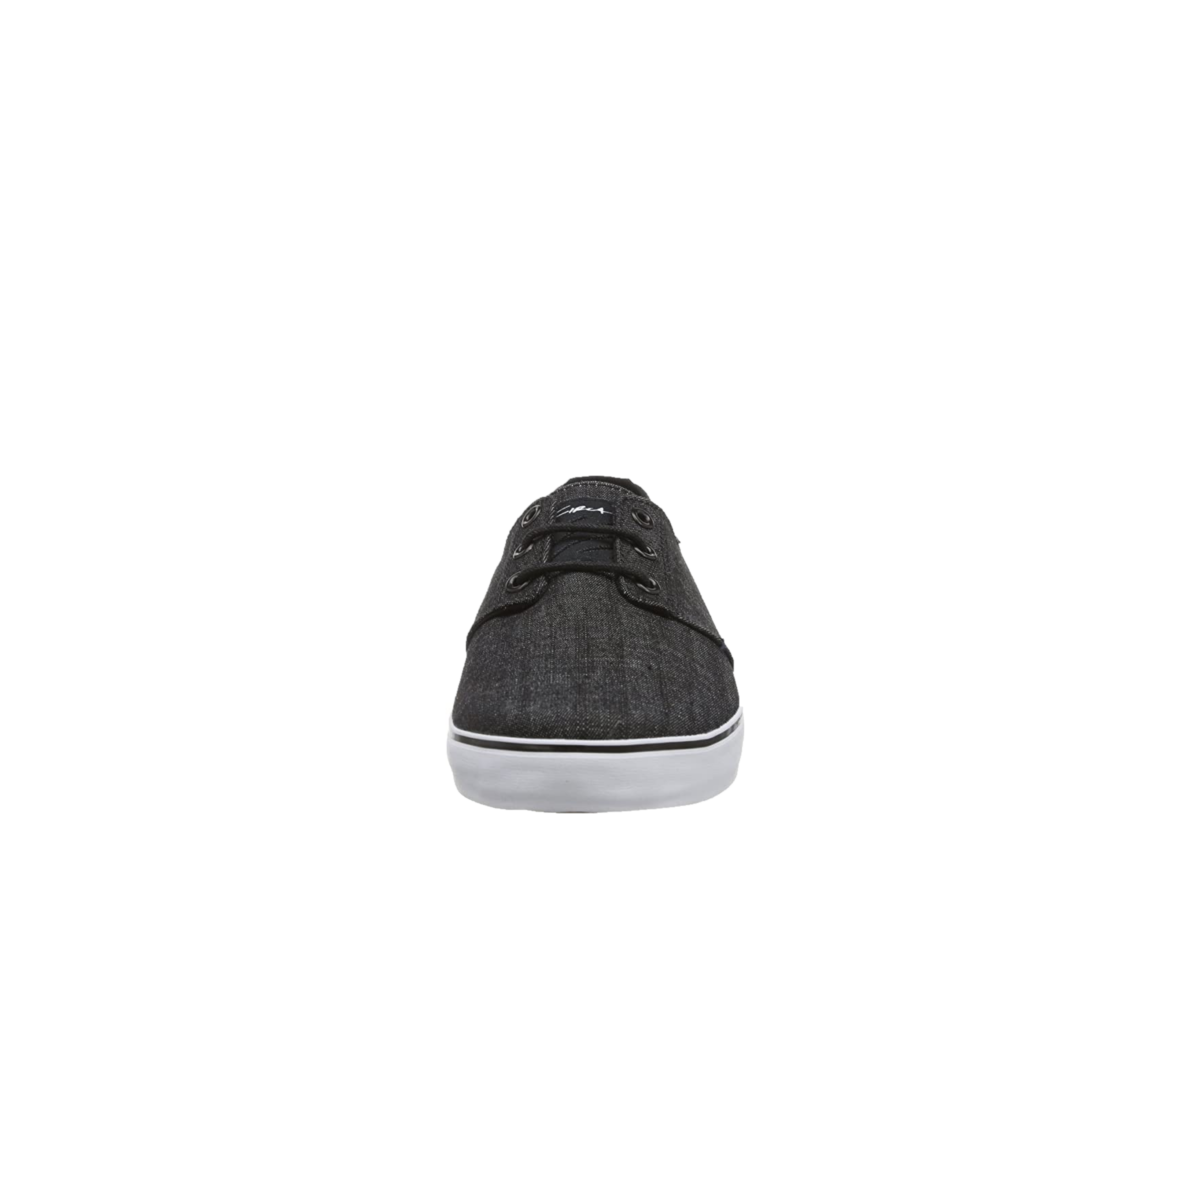 CIRCA CRIP-BCL CRIP MN'S (Medium) Black/Charcoal Textile Skate Shoes